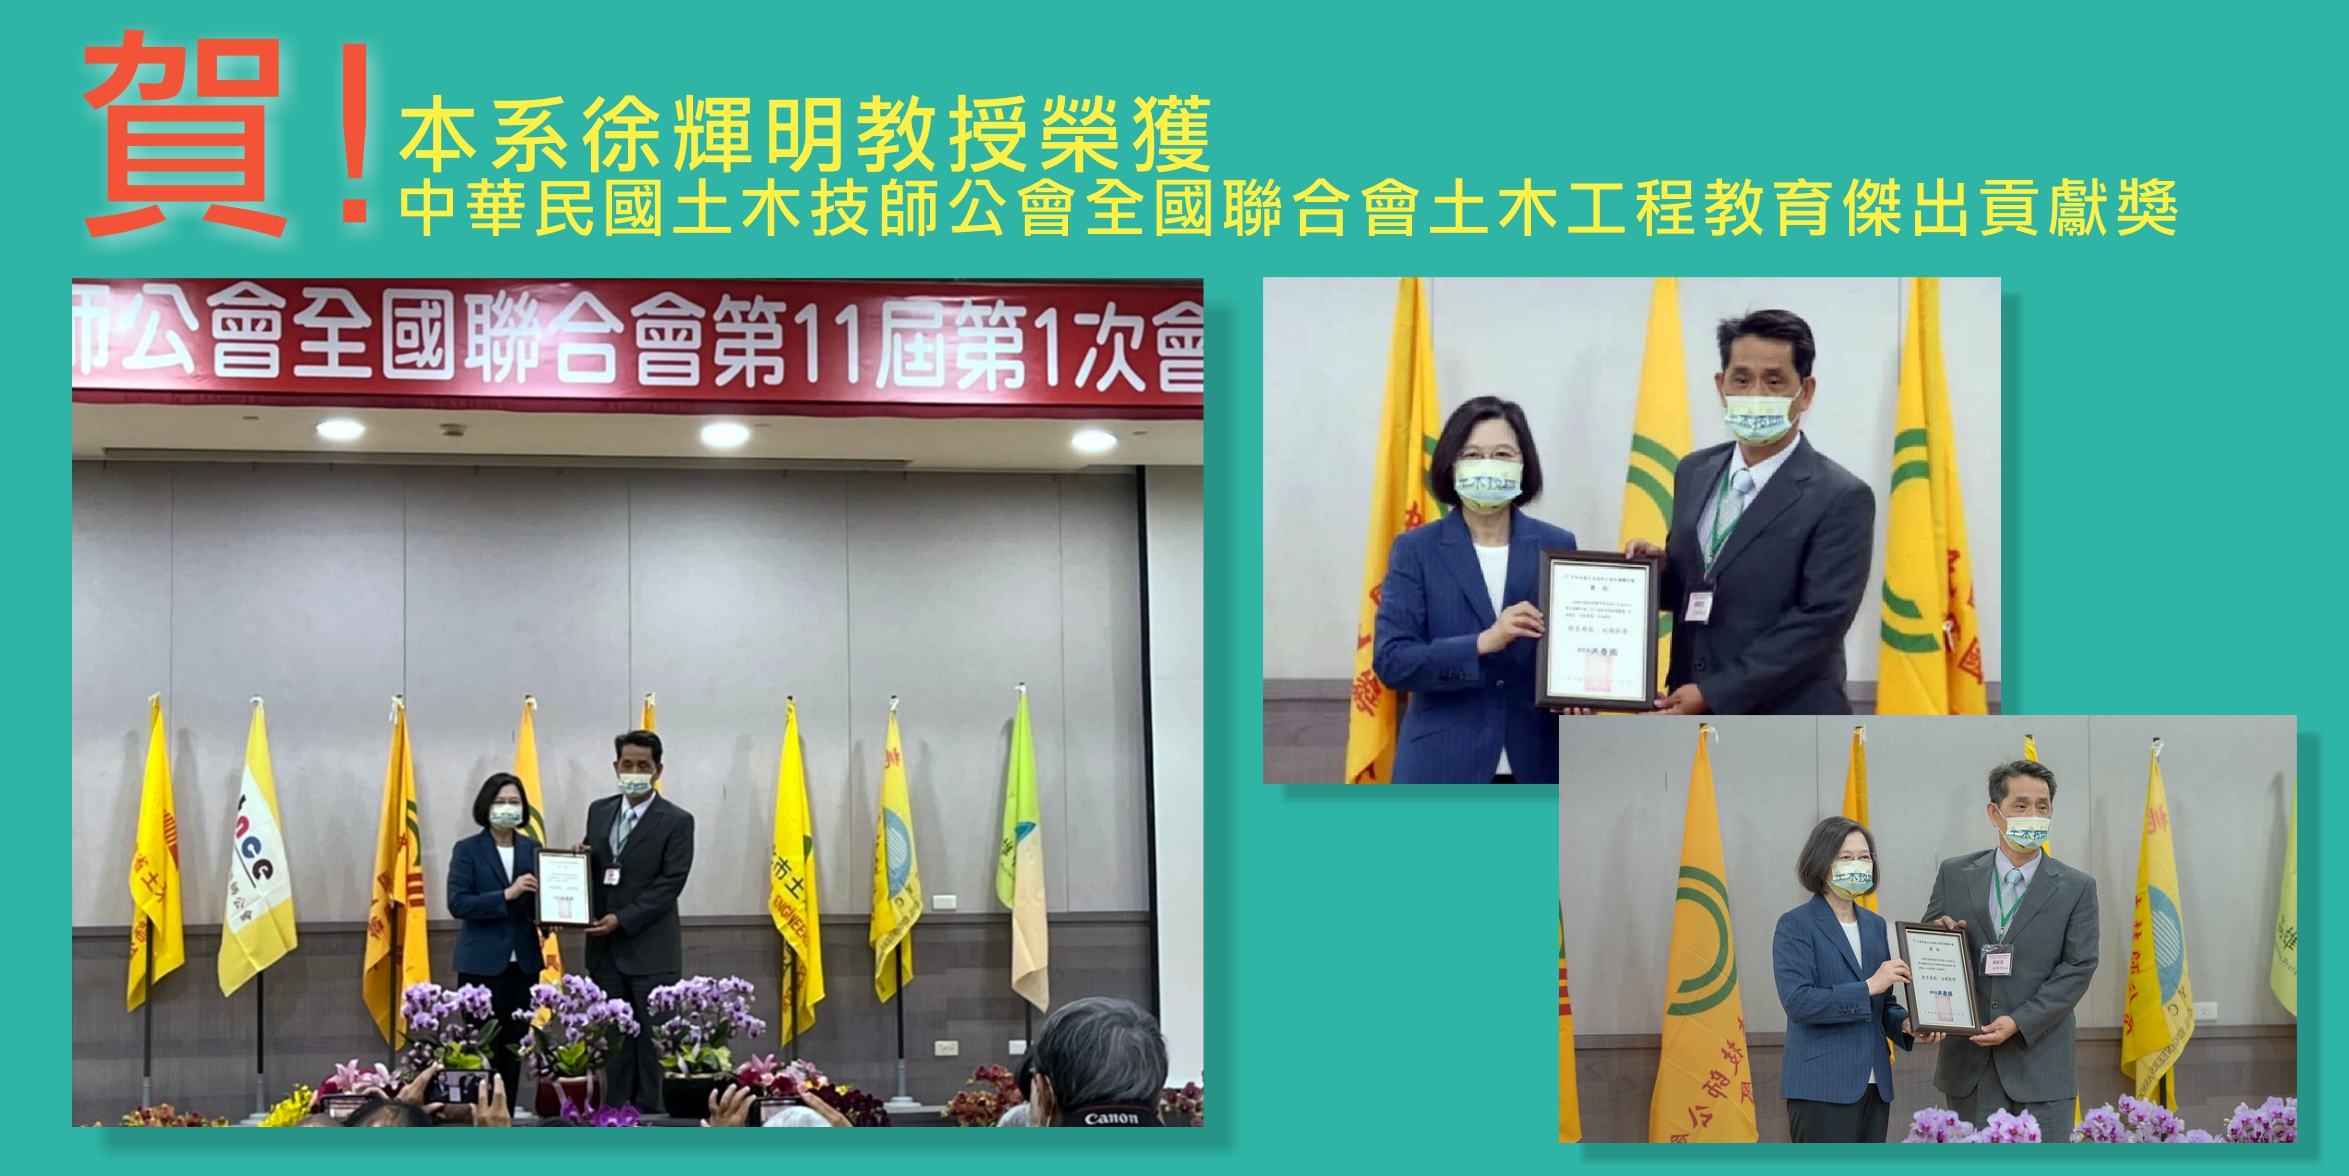 徐輝明教授榮獲總統頒發土木工程教育傑出貢獻獎